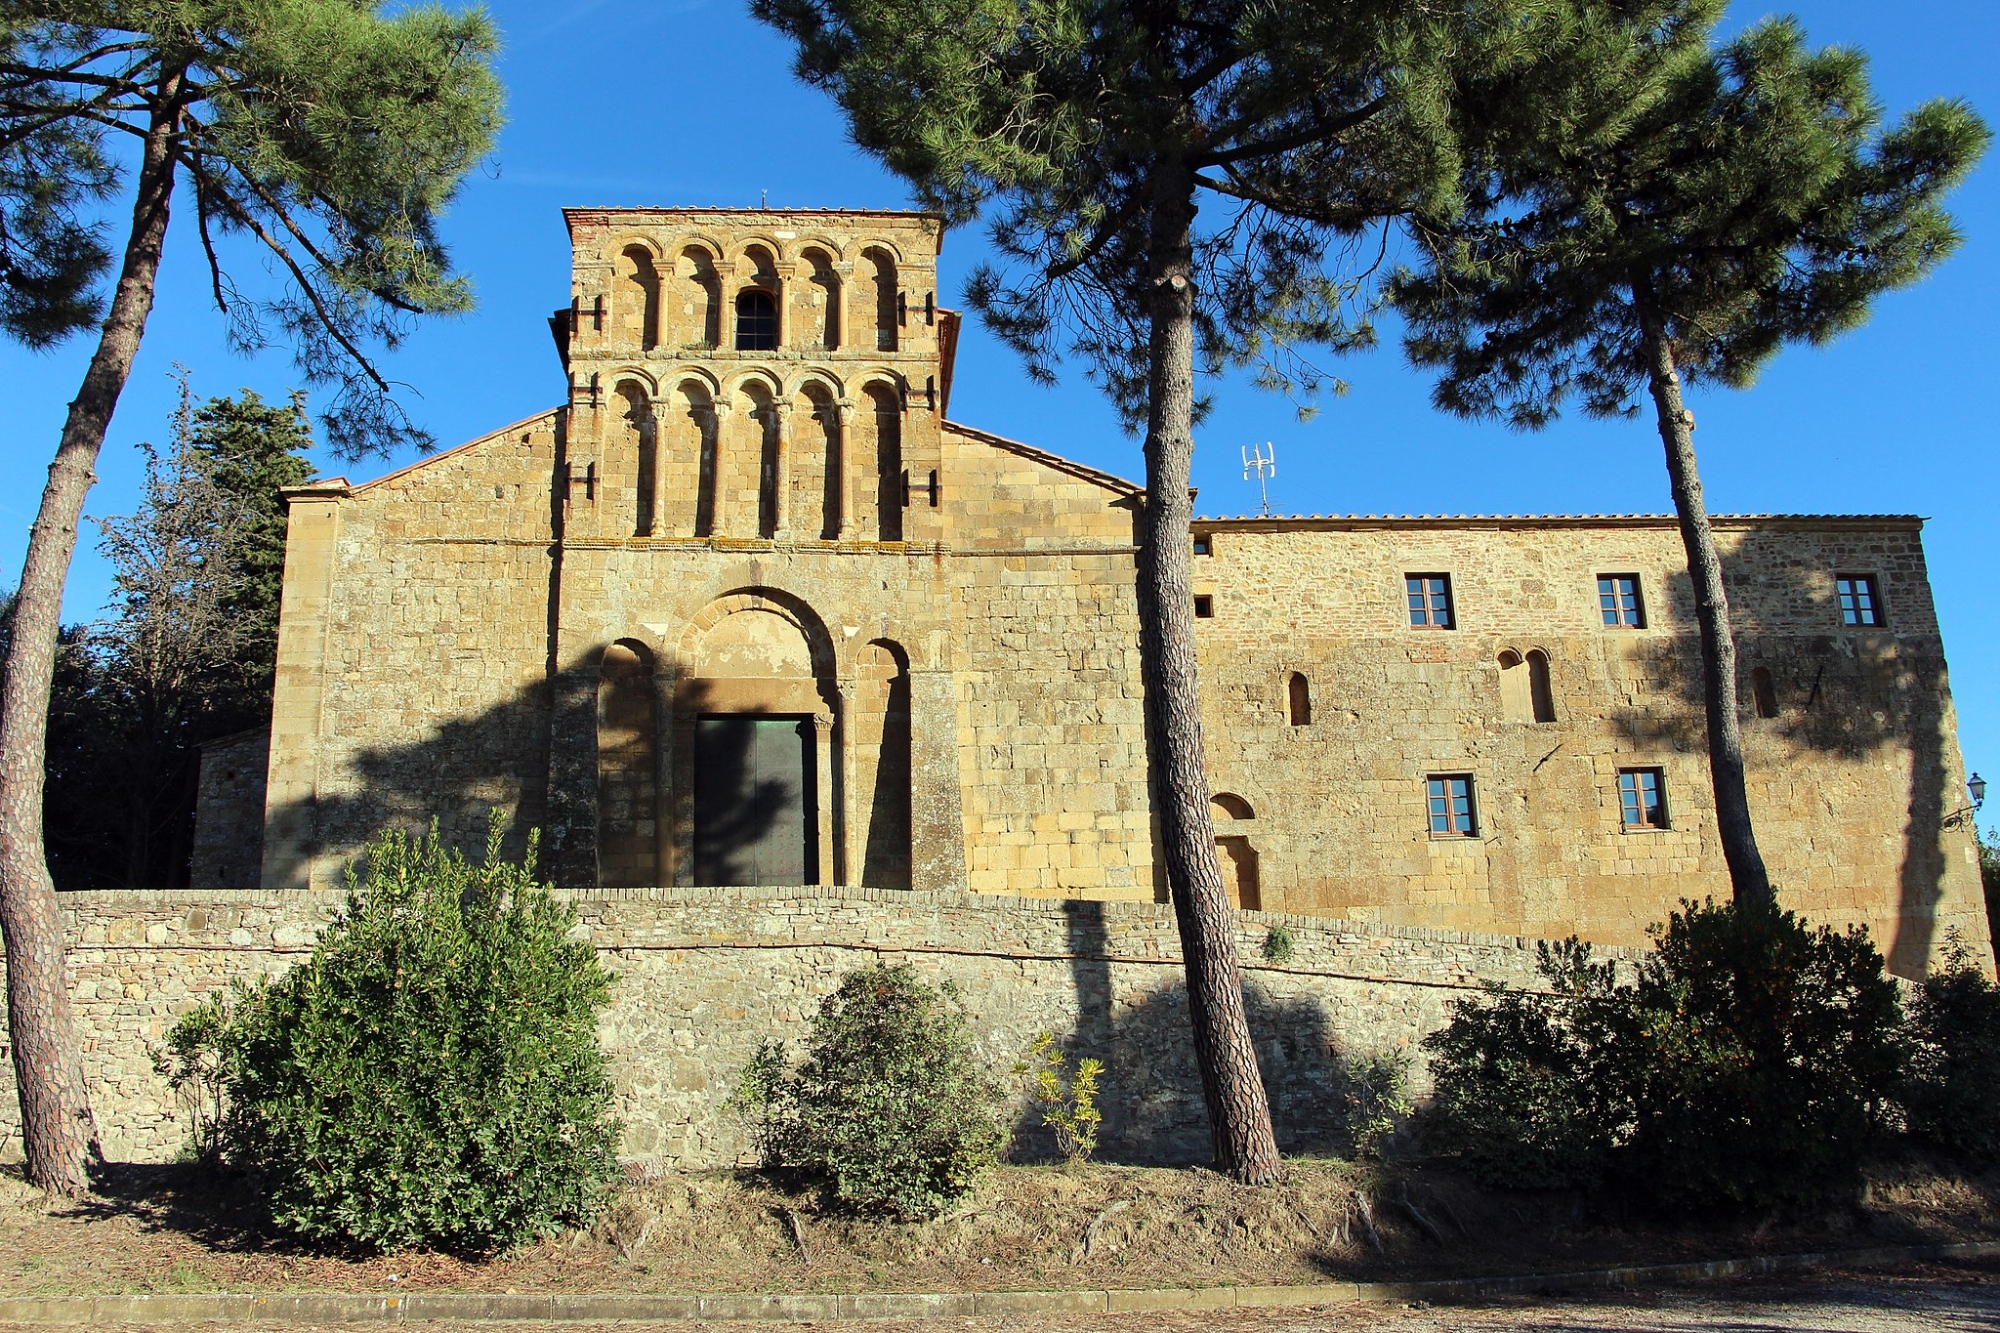 Parish church of Chianni